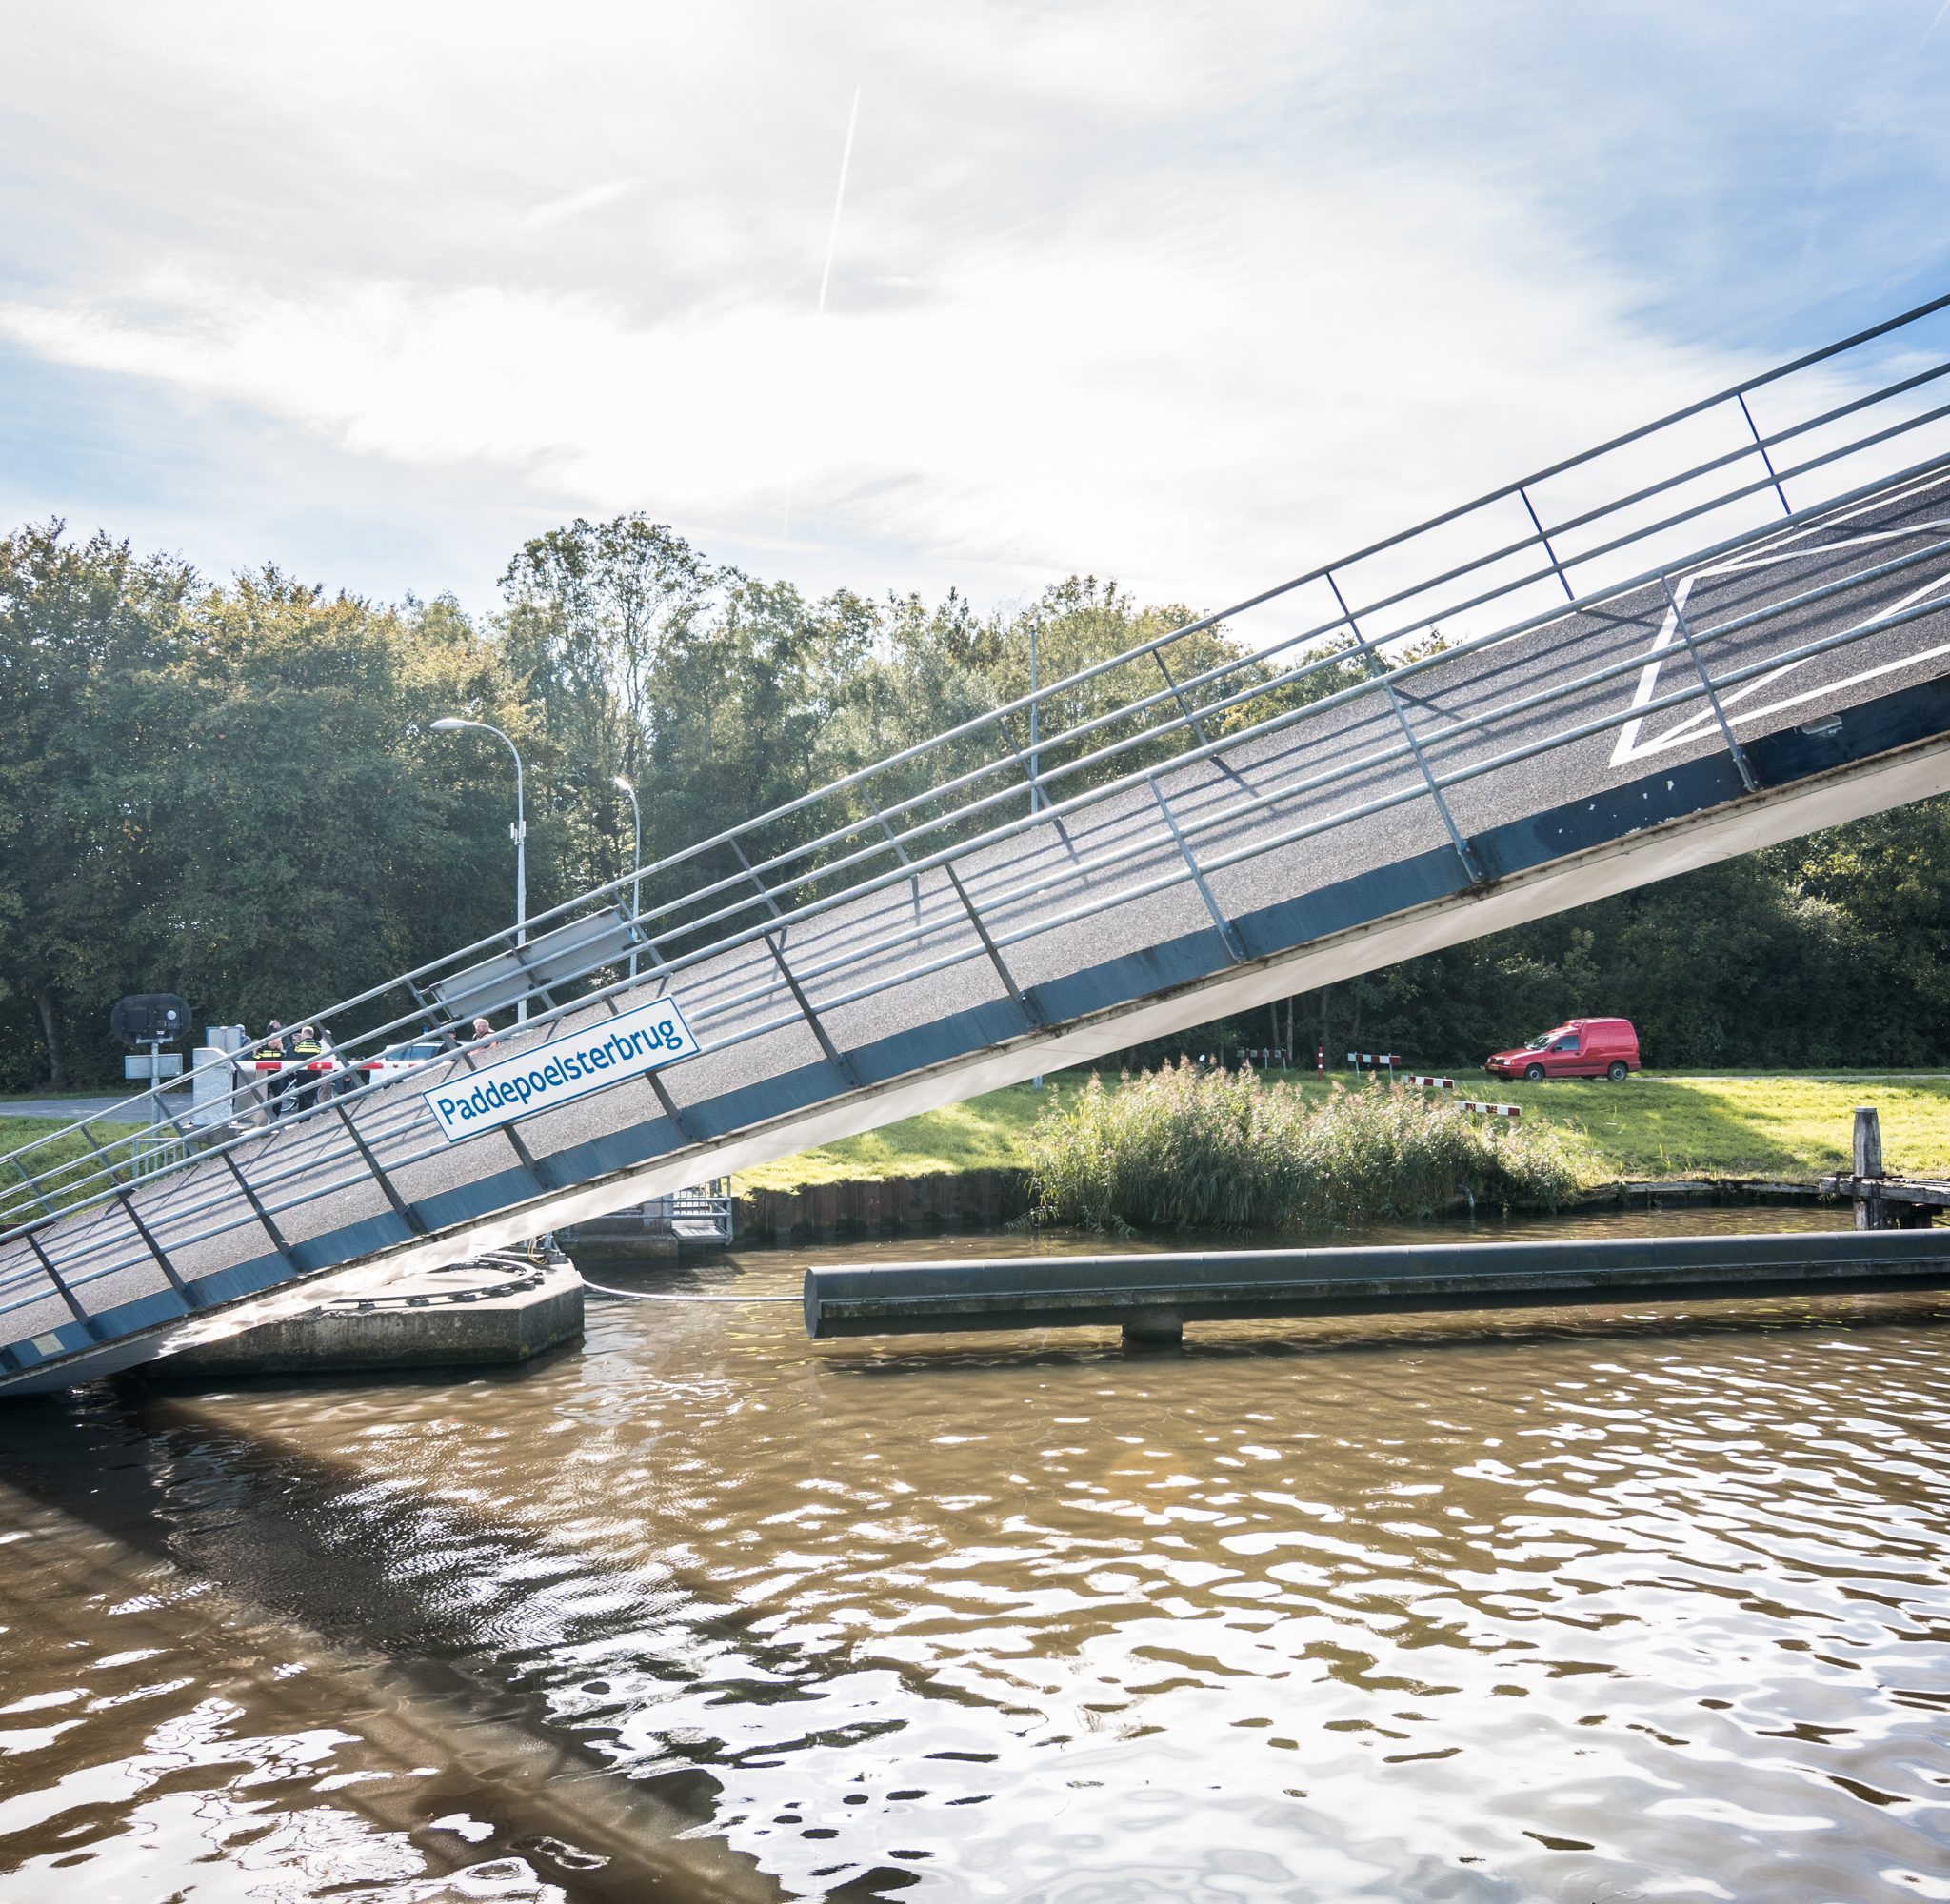 De Paddepoelsterbrug werd na de bedieningsfout van zijn fundatie geduwd door de Andamento en kwam gedeeltelijk in het water terecht. (Archieffoto De Vries Media)